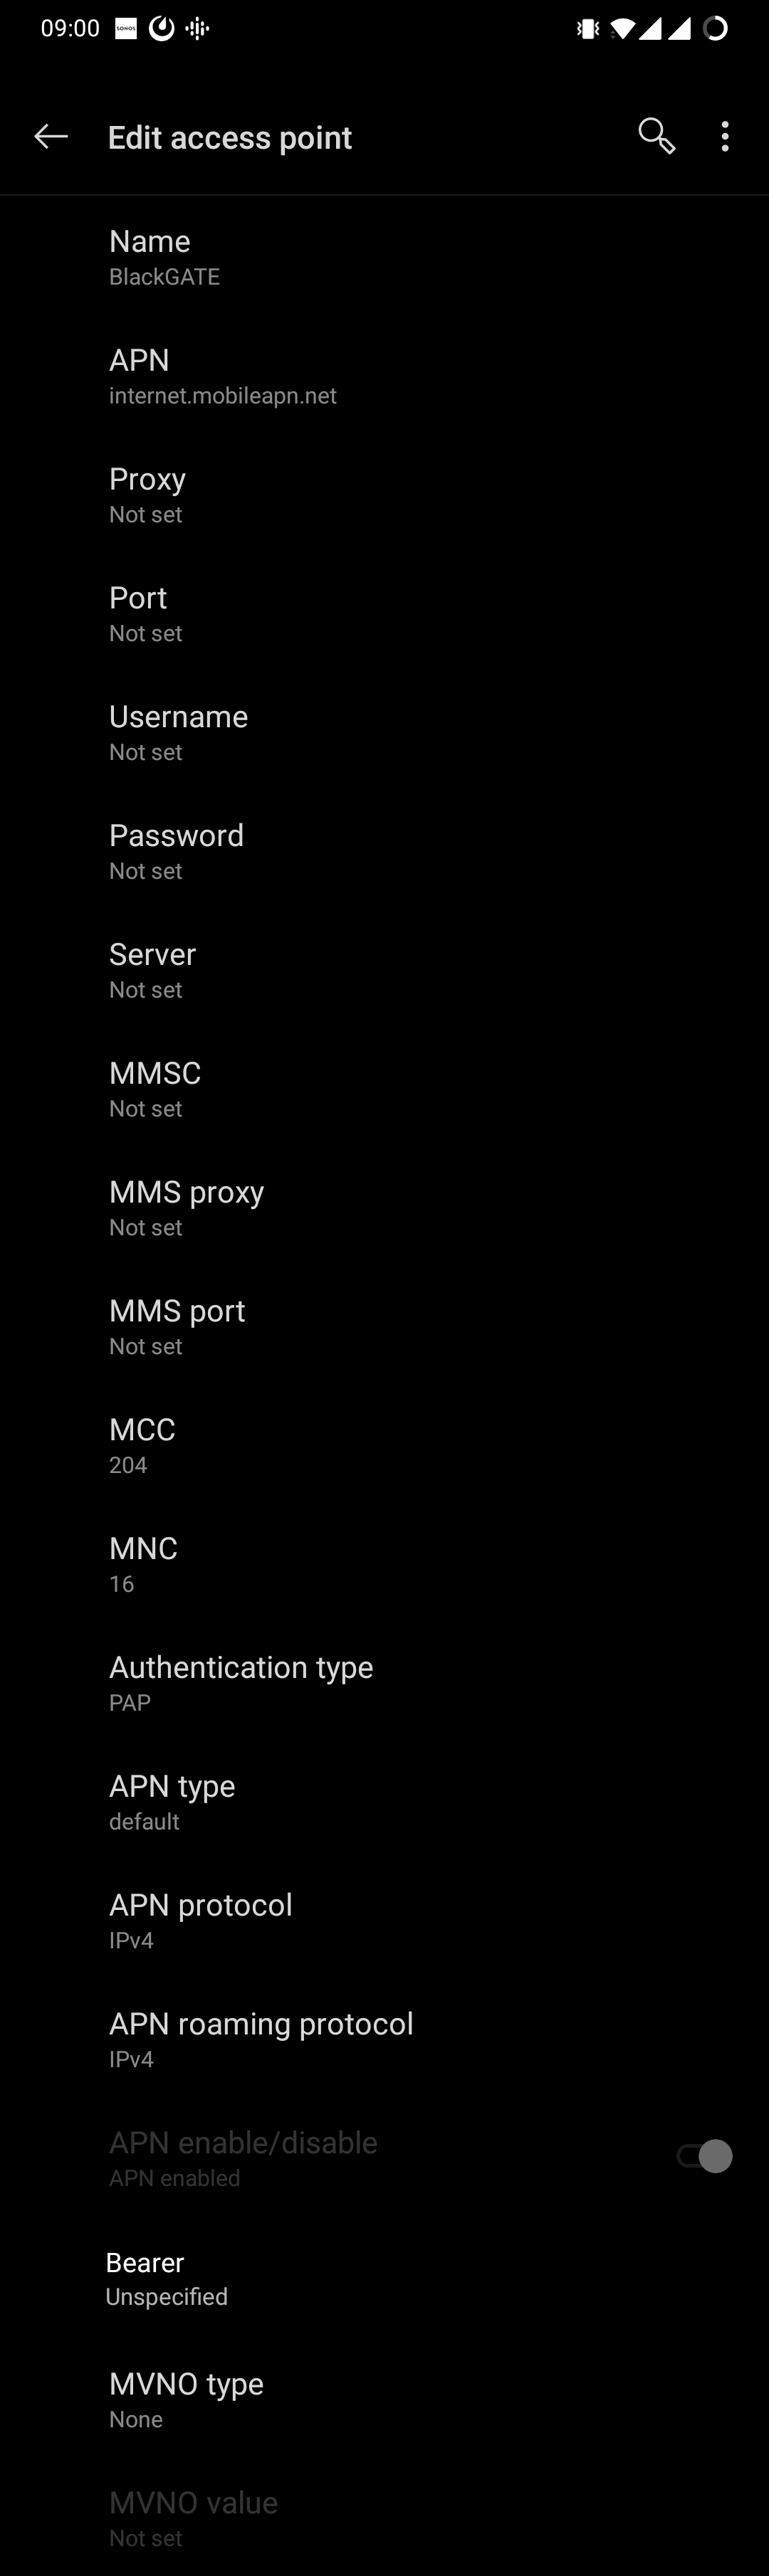 APN settings screenshot android